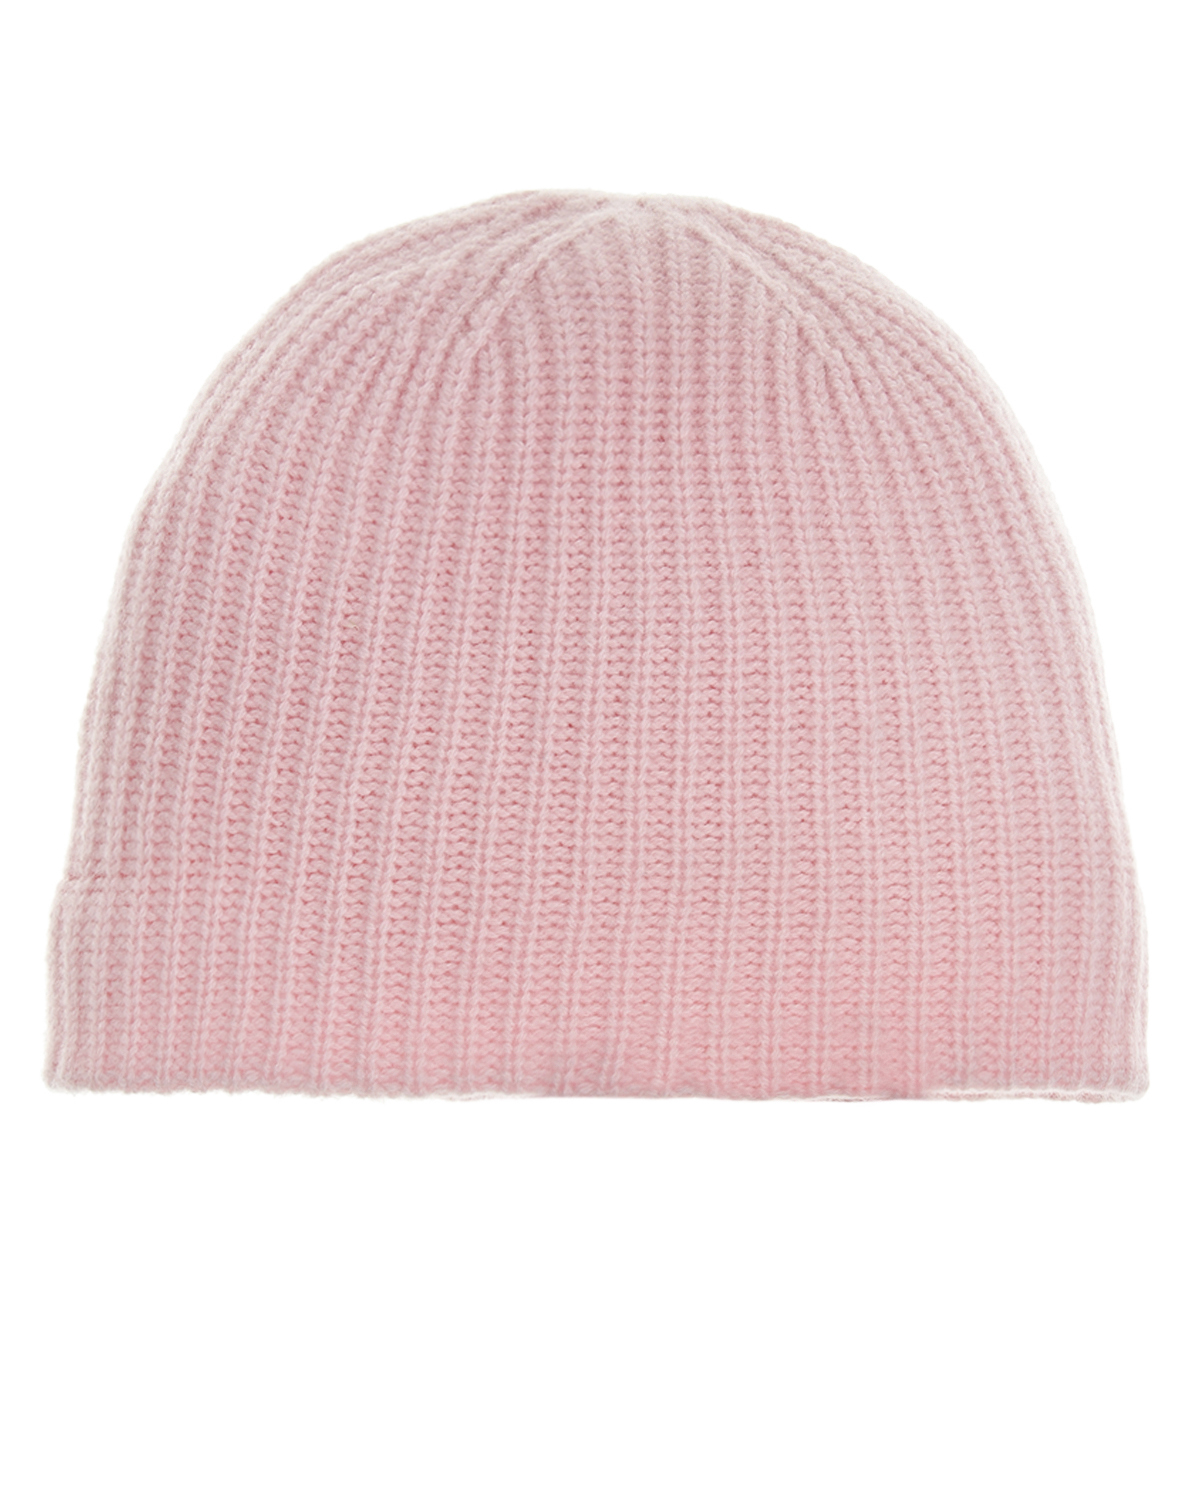 Розовая шапка из кашемира Yves Salomon, размер unica, цвет розовый